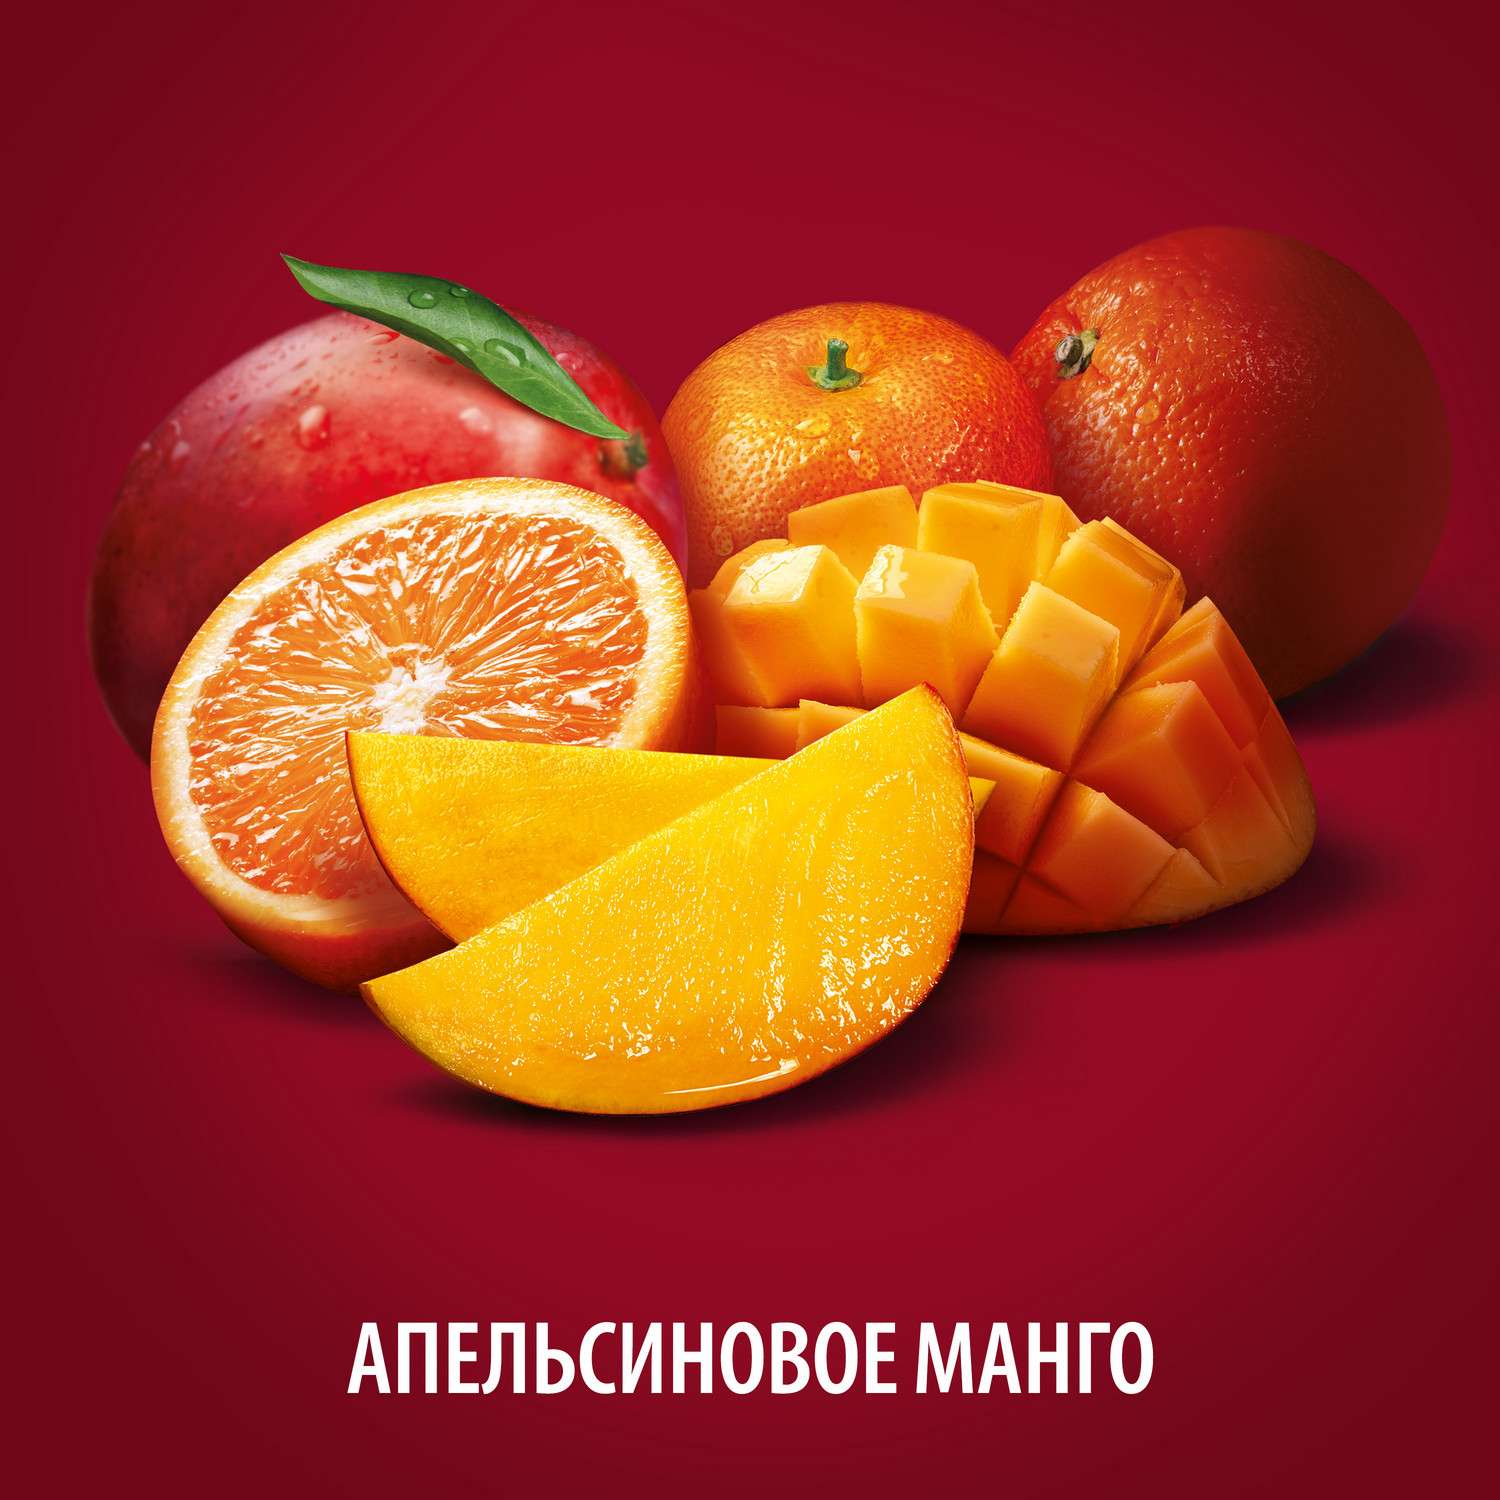 Напиток сокосодержащий Любимый со вкусом апельсинов манго и мандаринов с мякотью 1.93л - фото 3